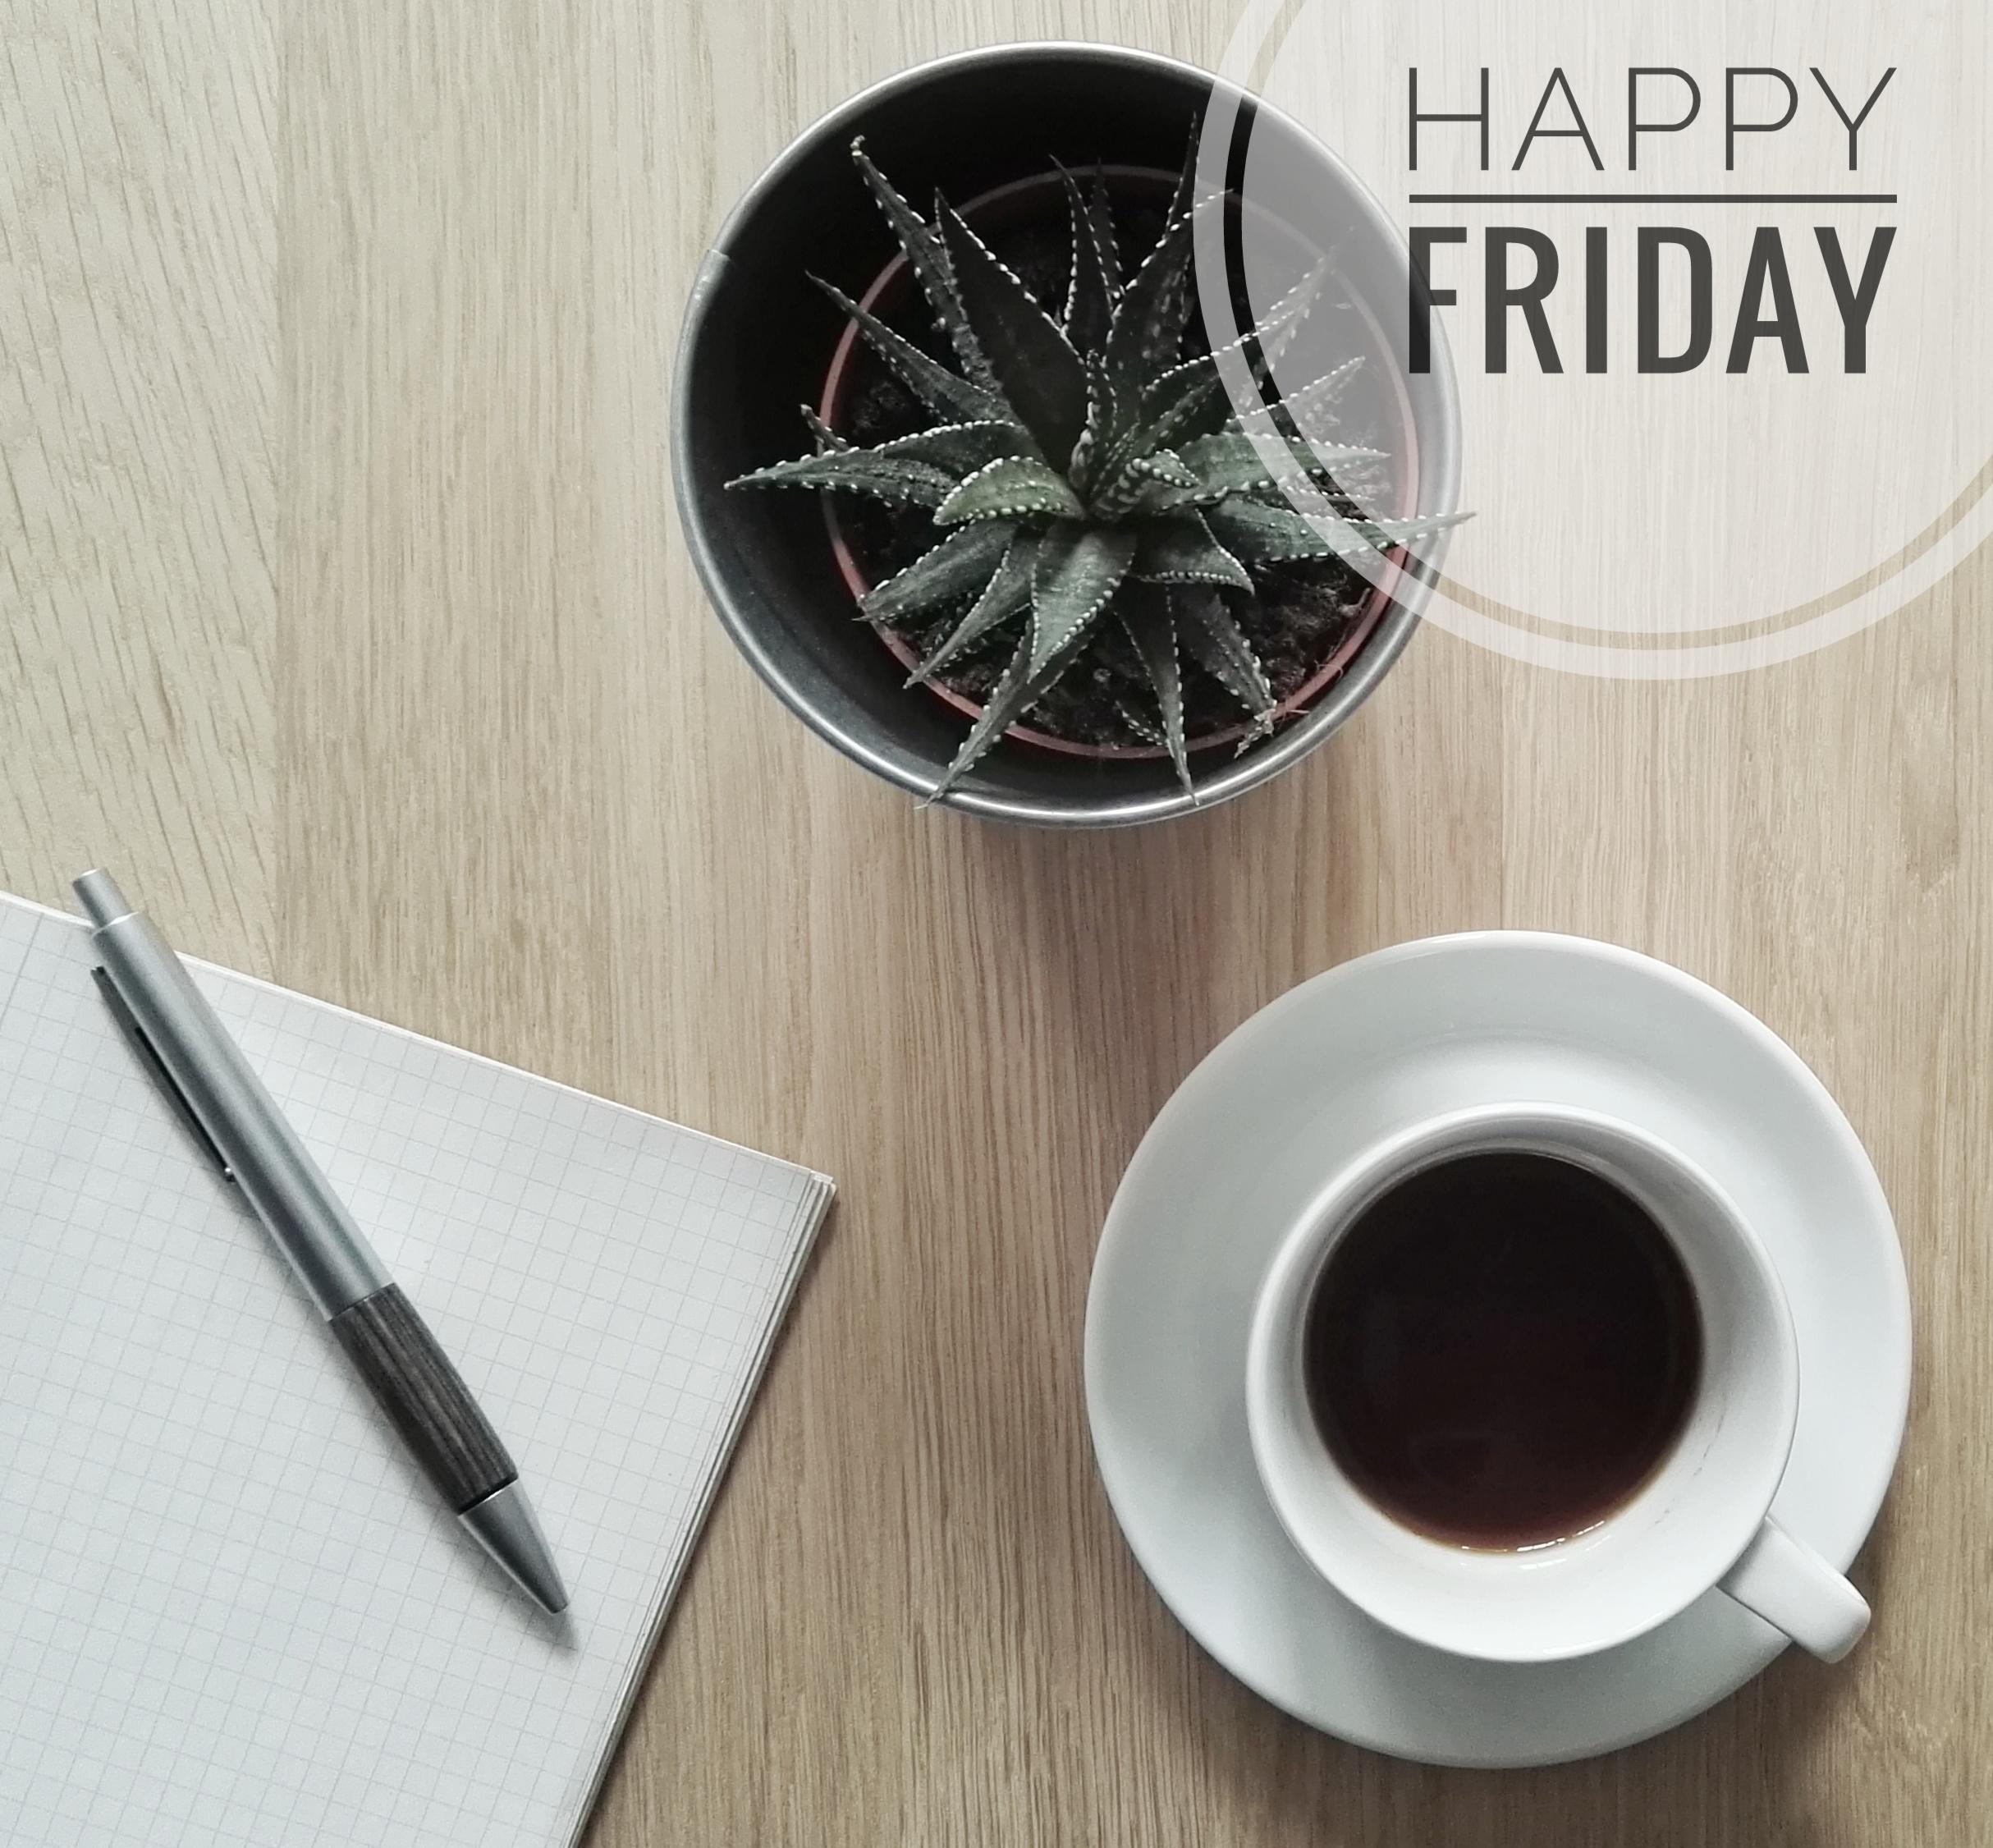 Wünsche euch allen einen schönen Freitag :) #office #kaffee #kugelschreiber